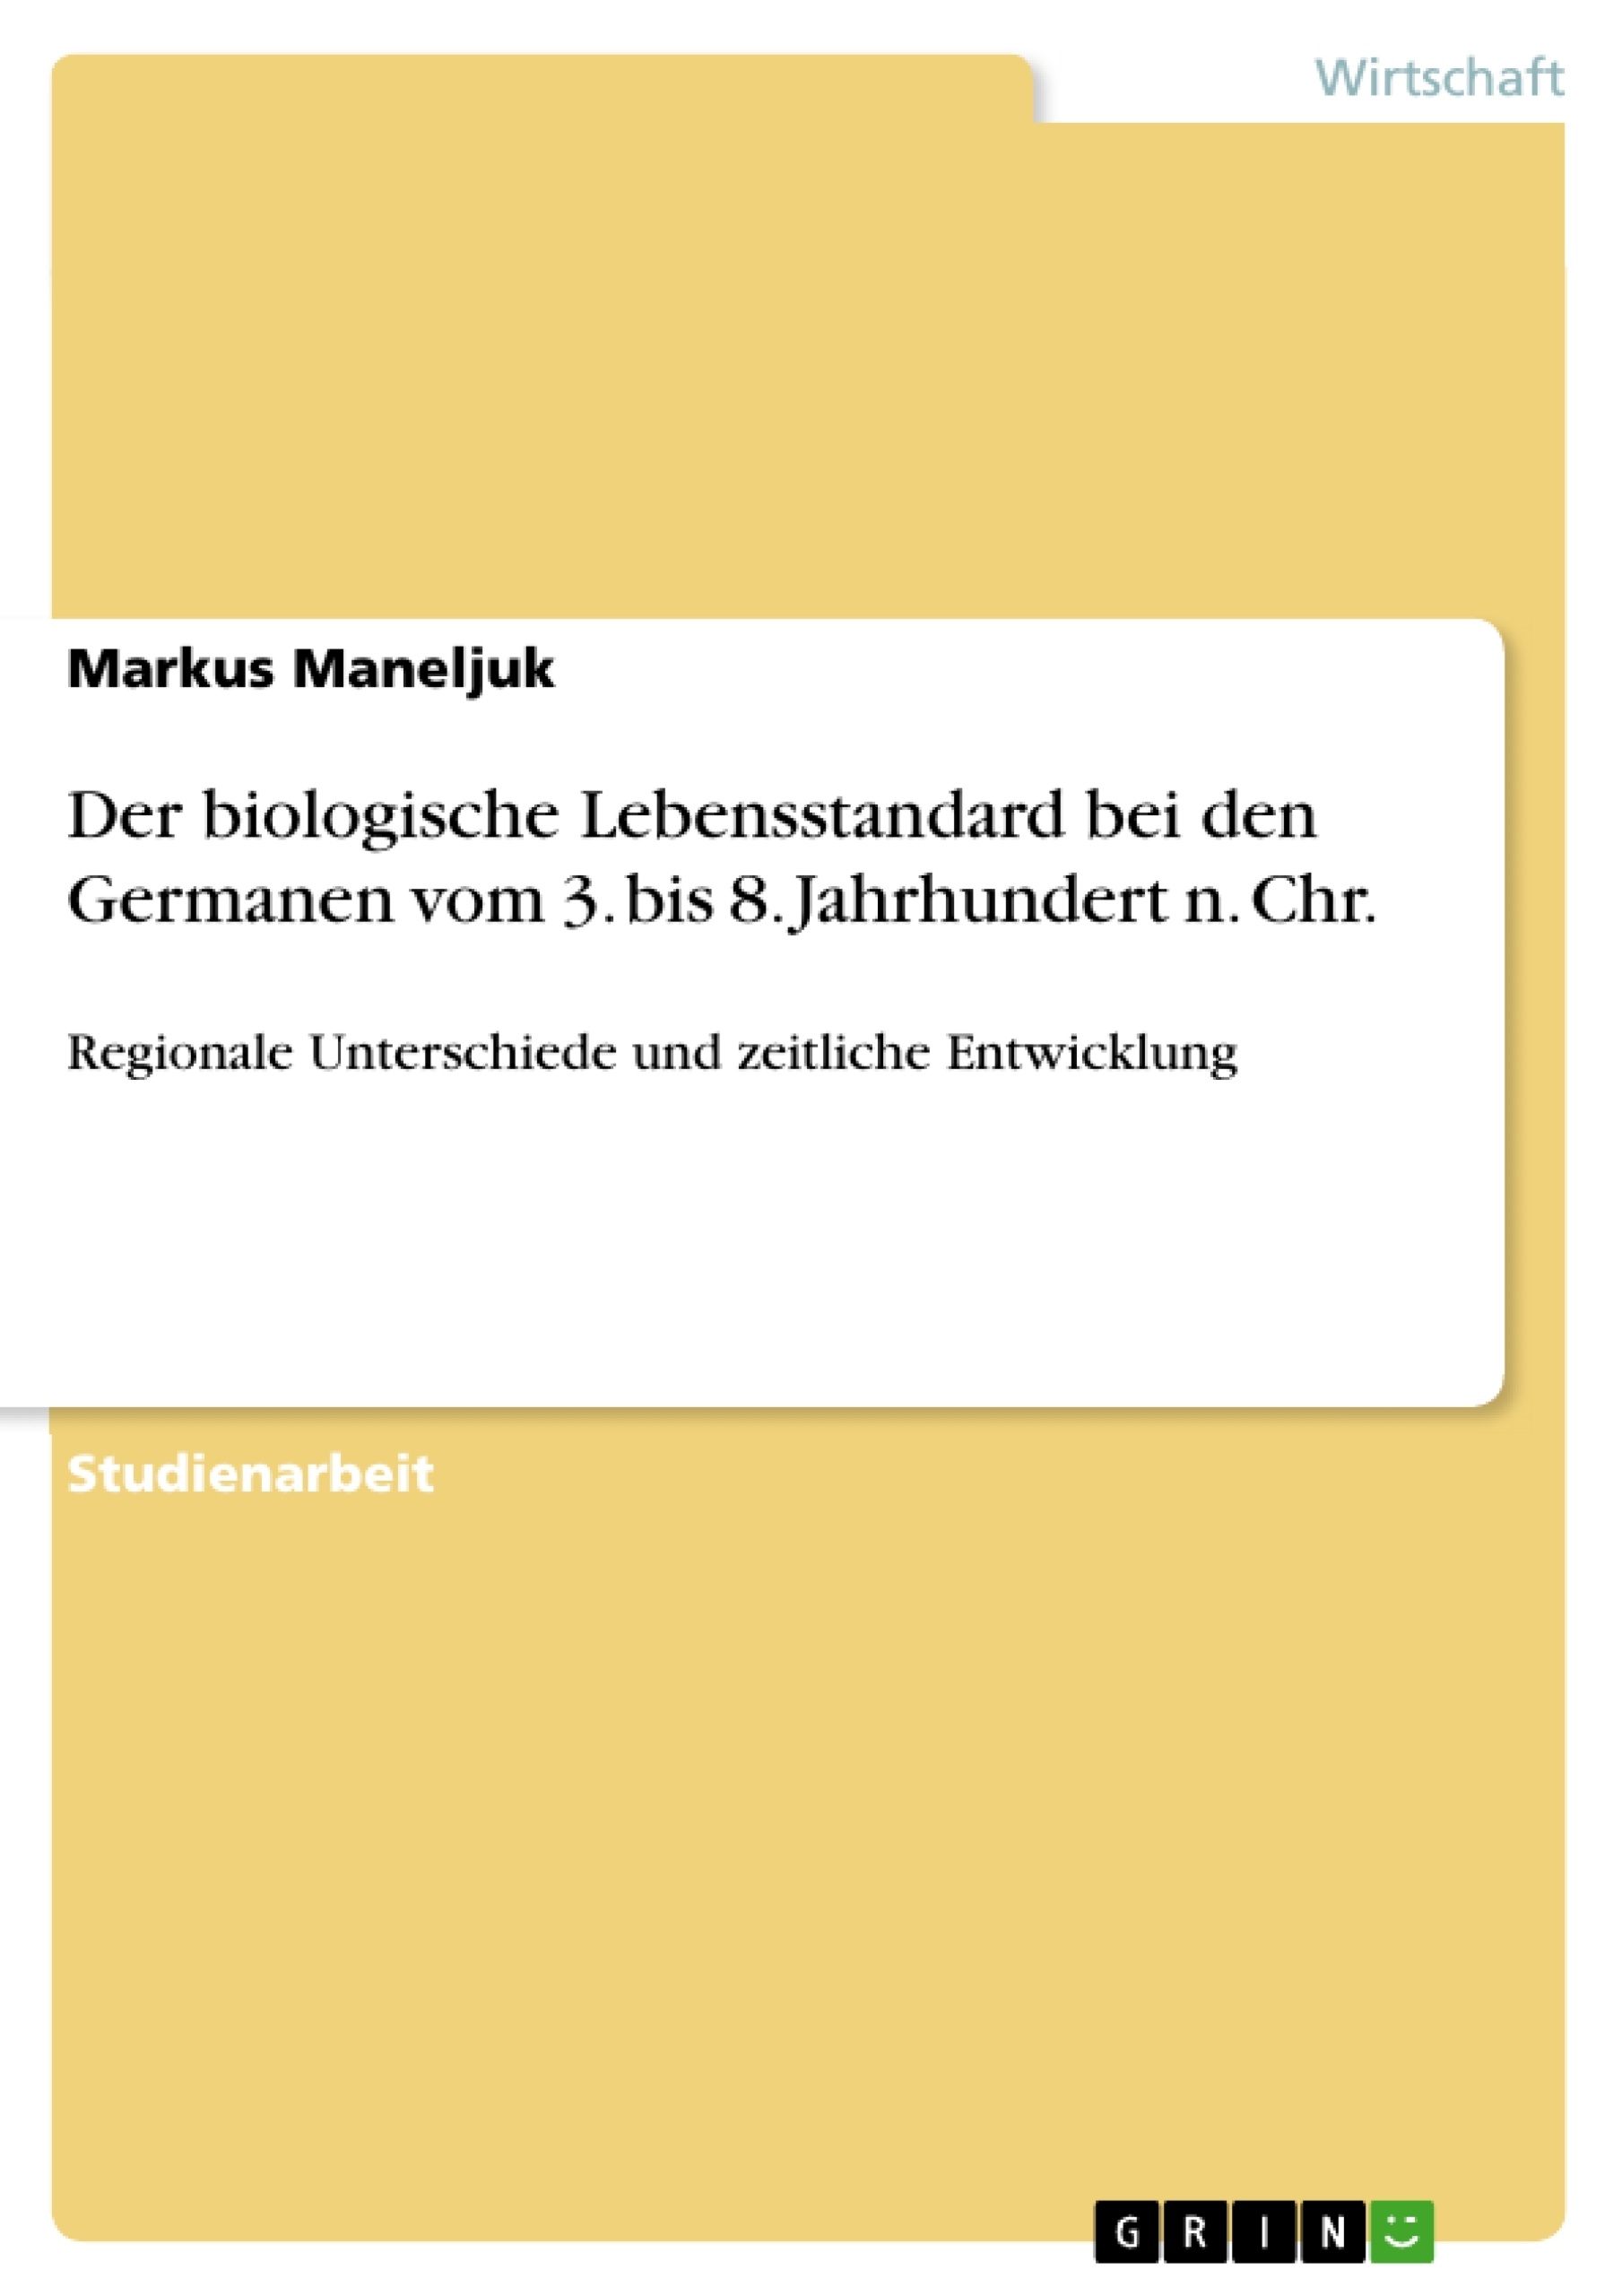 Title: Der biologische Lebensstandard bei den Germanen vom 3. bis 8. Jahrhundert n. Chr.